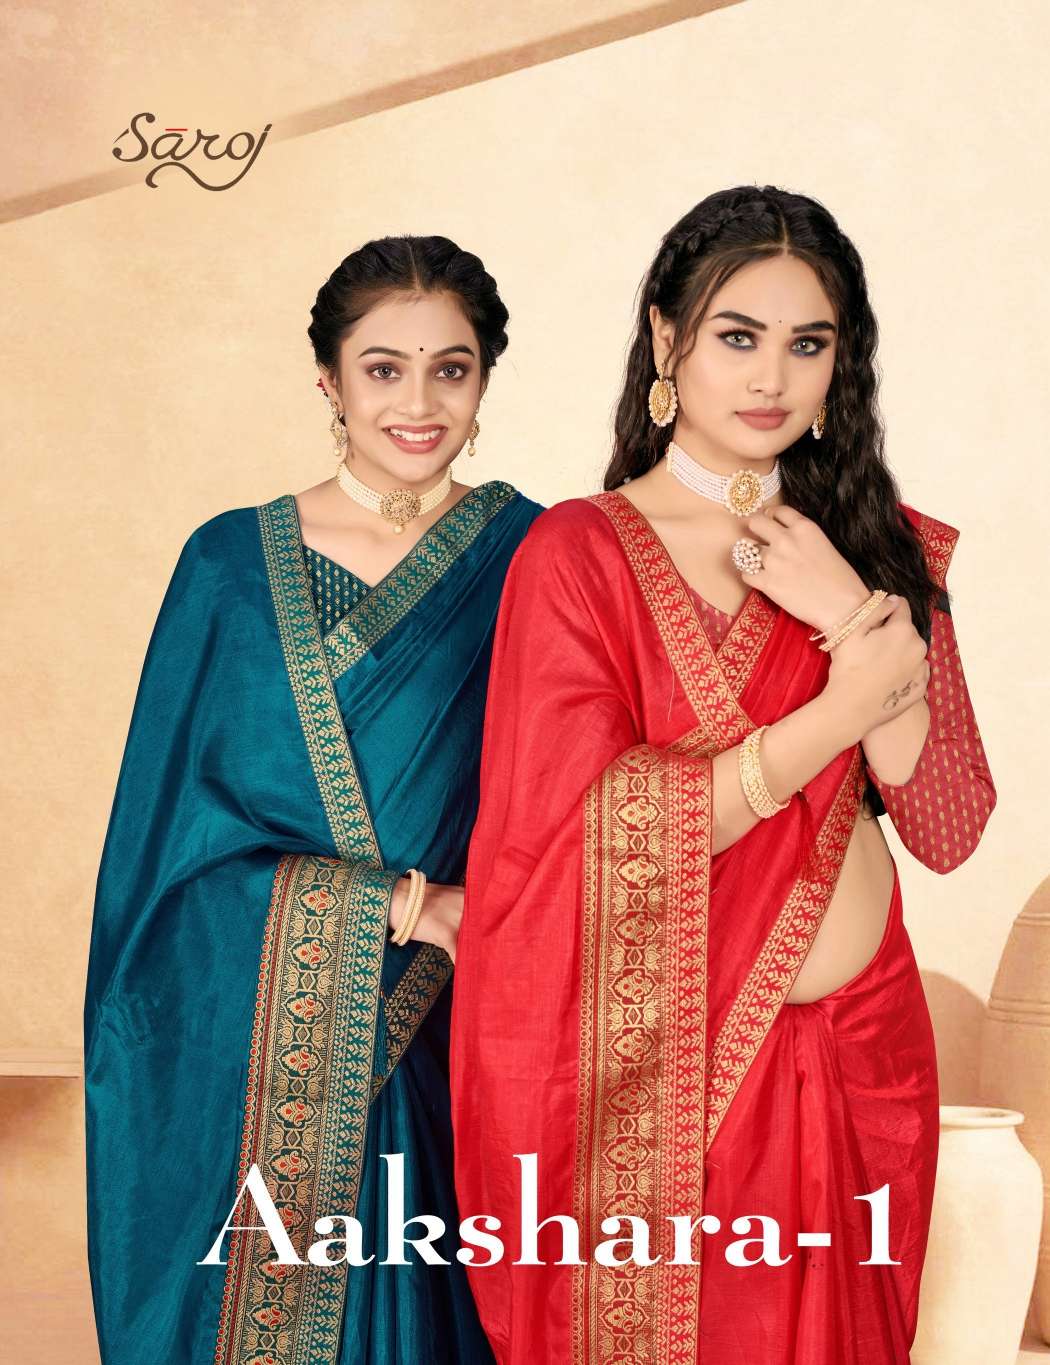 Saroj textile presents Aakshara vol 1 casual sarees catalogue